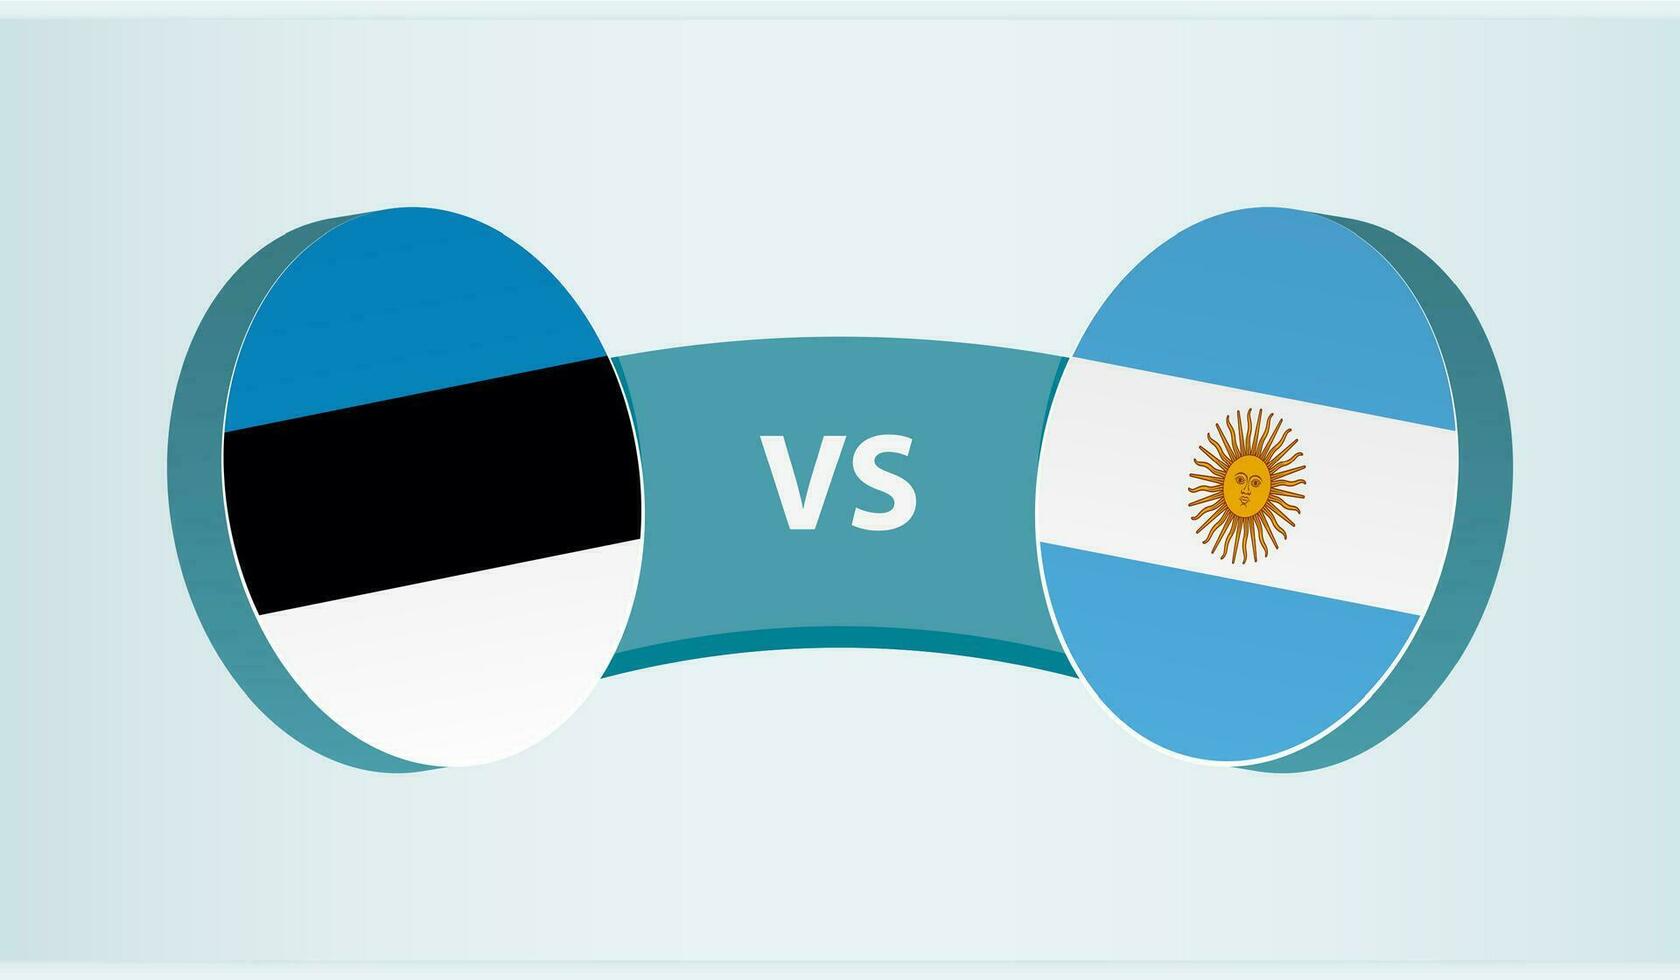 Estonia versus Argentina, team sports competition concept. vector